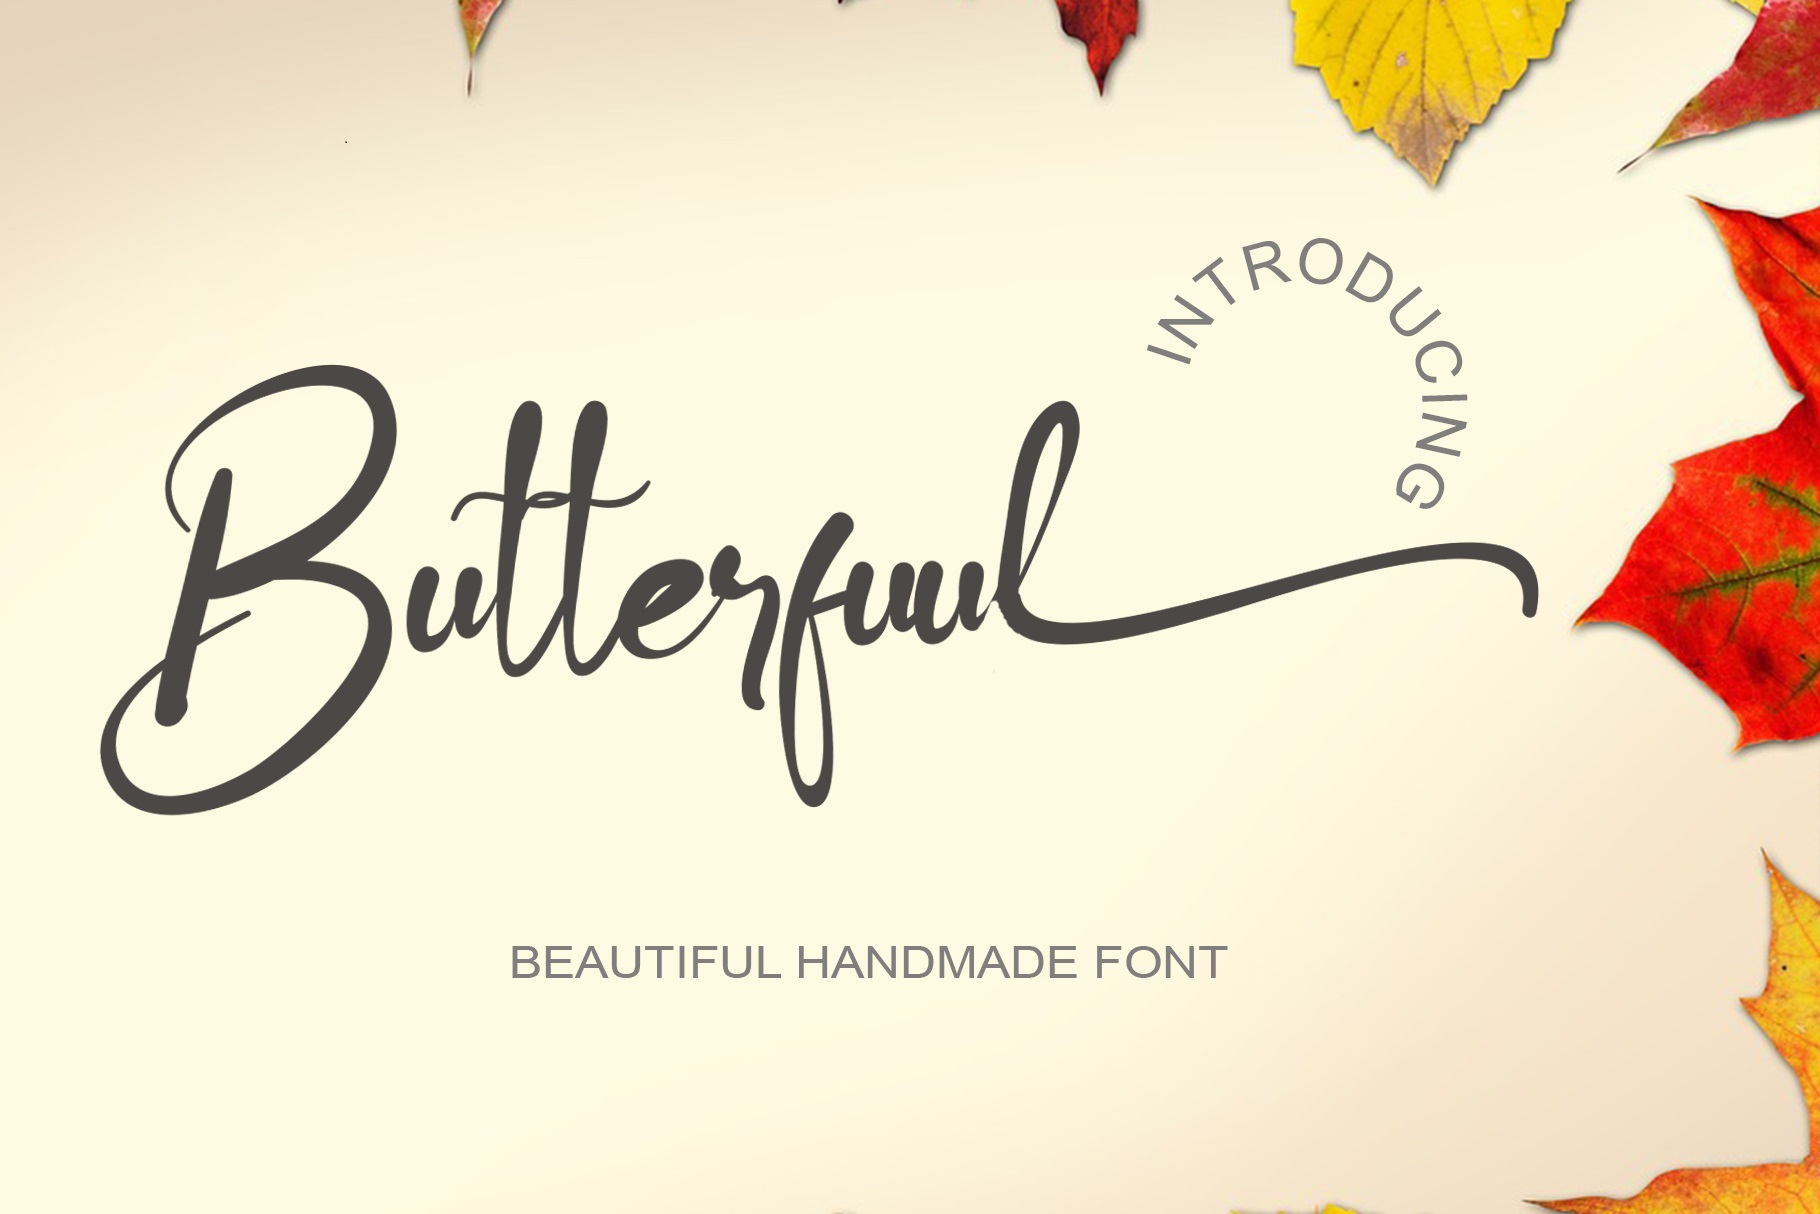 Butterfuul Font